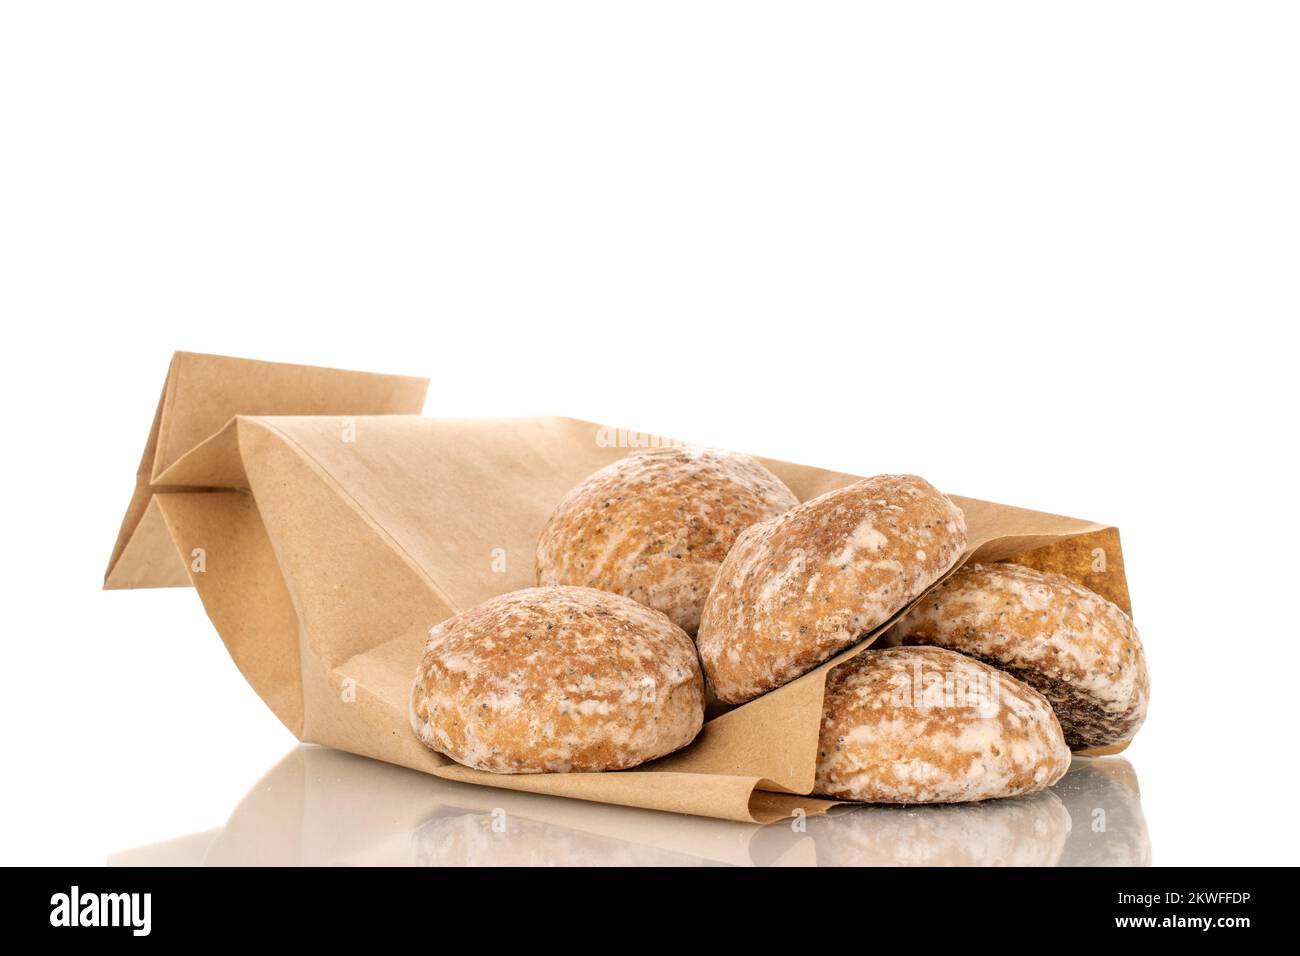 Varias galletas dulces y sabrosas de jengibre con bolsa de papel, macro, aisladas sobre fondo blanco. Foto de stock